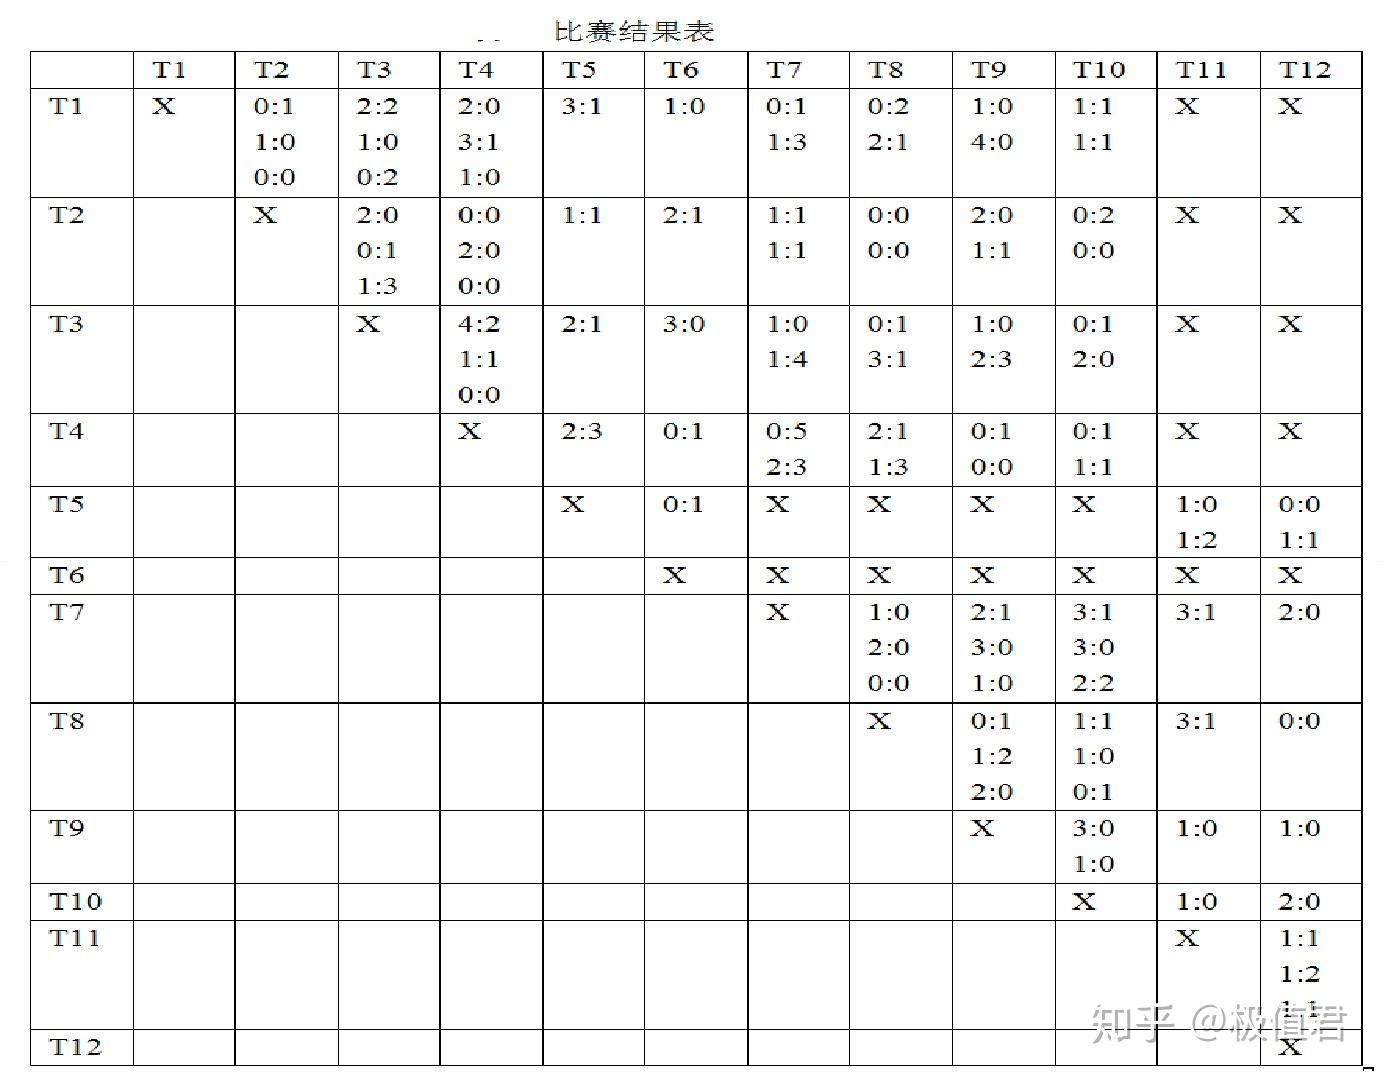 下面的表6.10和表6.11分别是两次大循环相互的比赛成绩